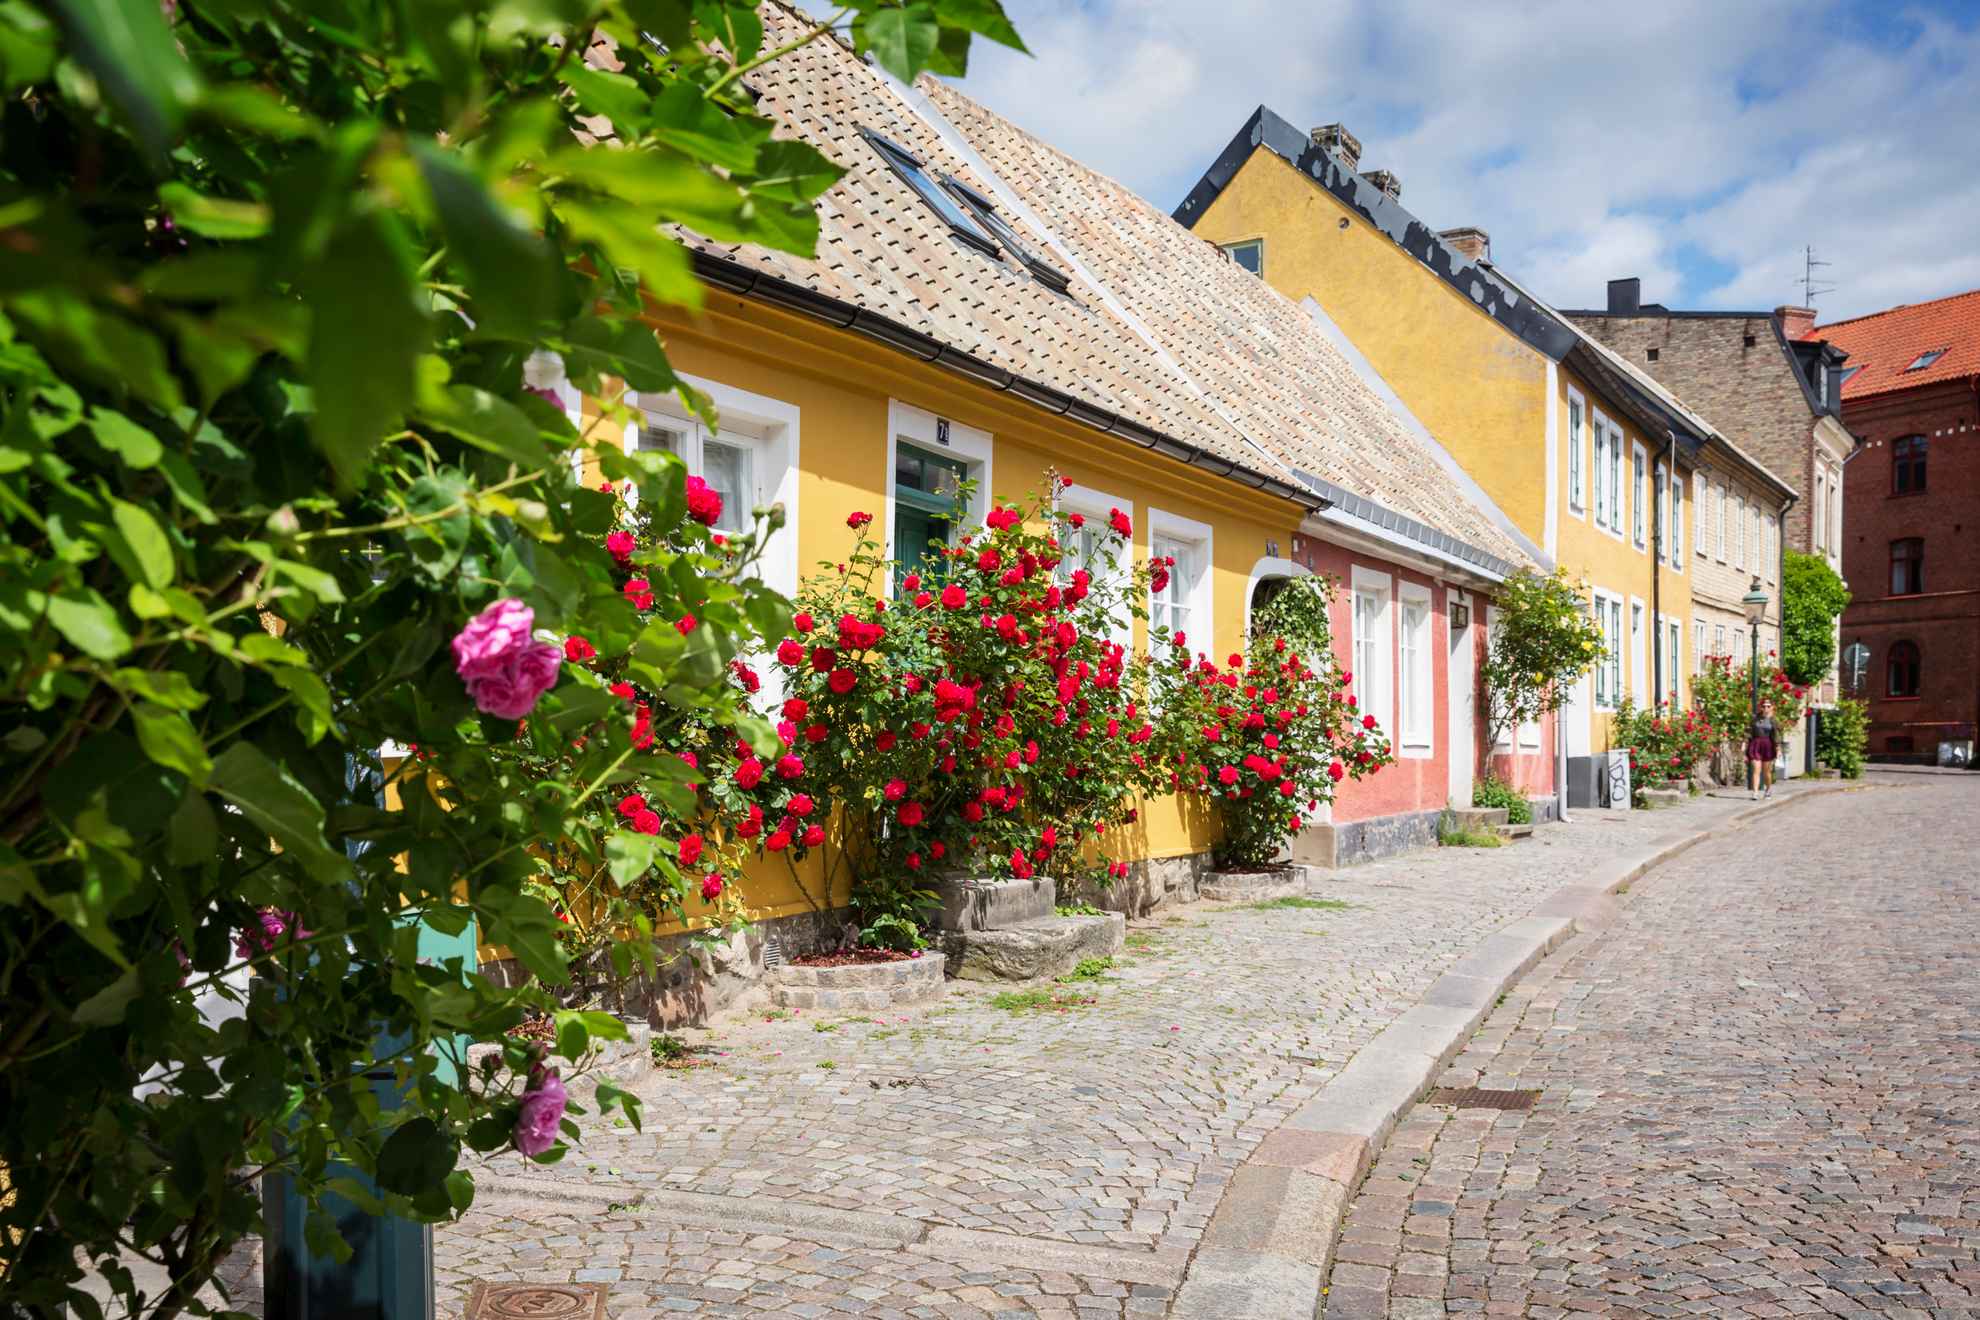 Gele en roze rijhuizen met rozenstruiken voor in een straat met kinderkopjes.